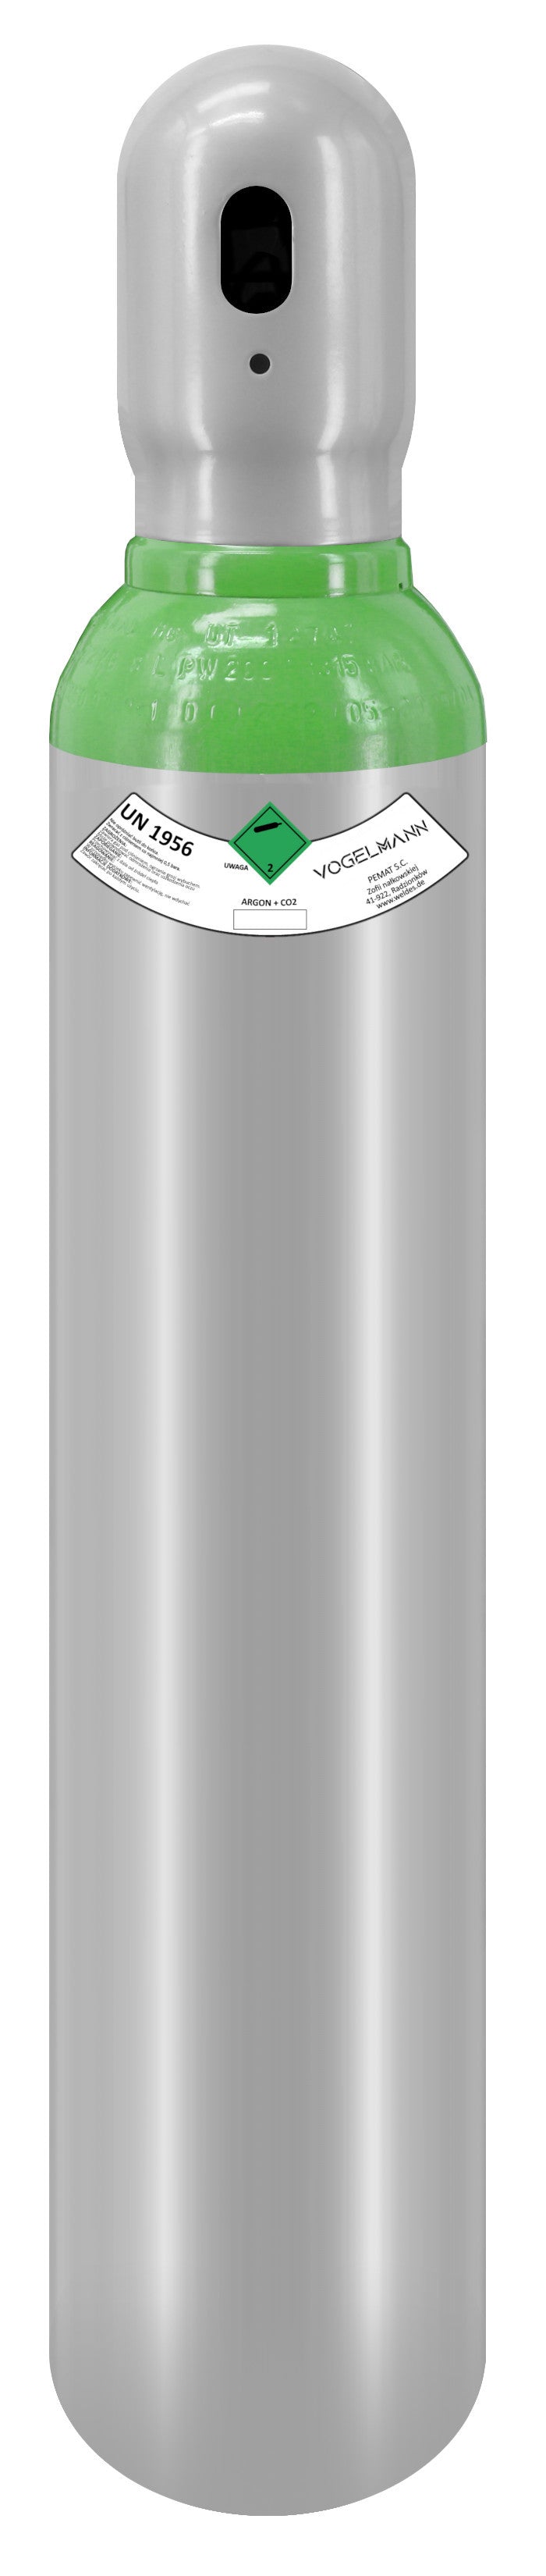 Argon/CO2-Vollgasflasche 8L 1,5m3